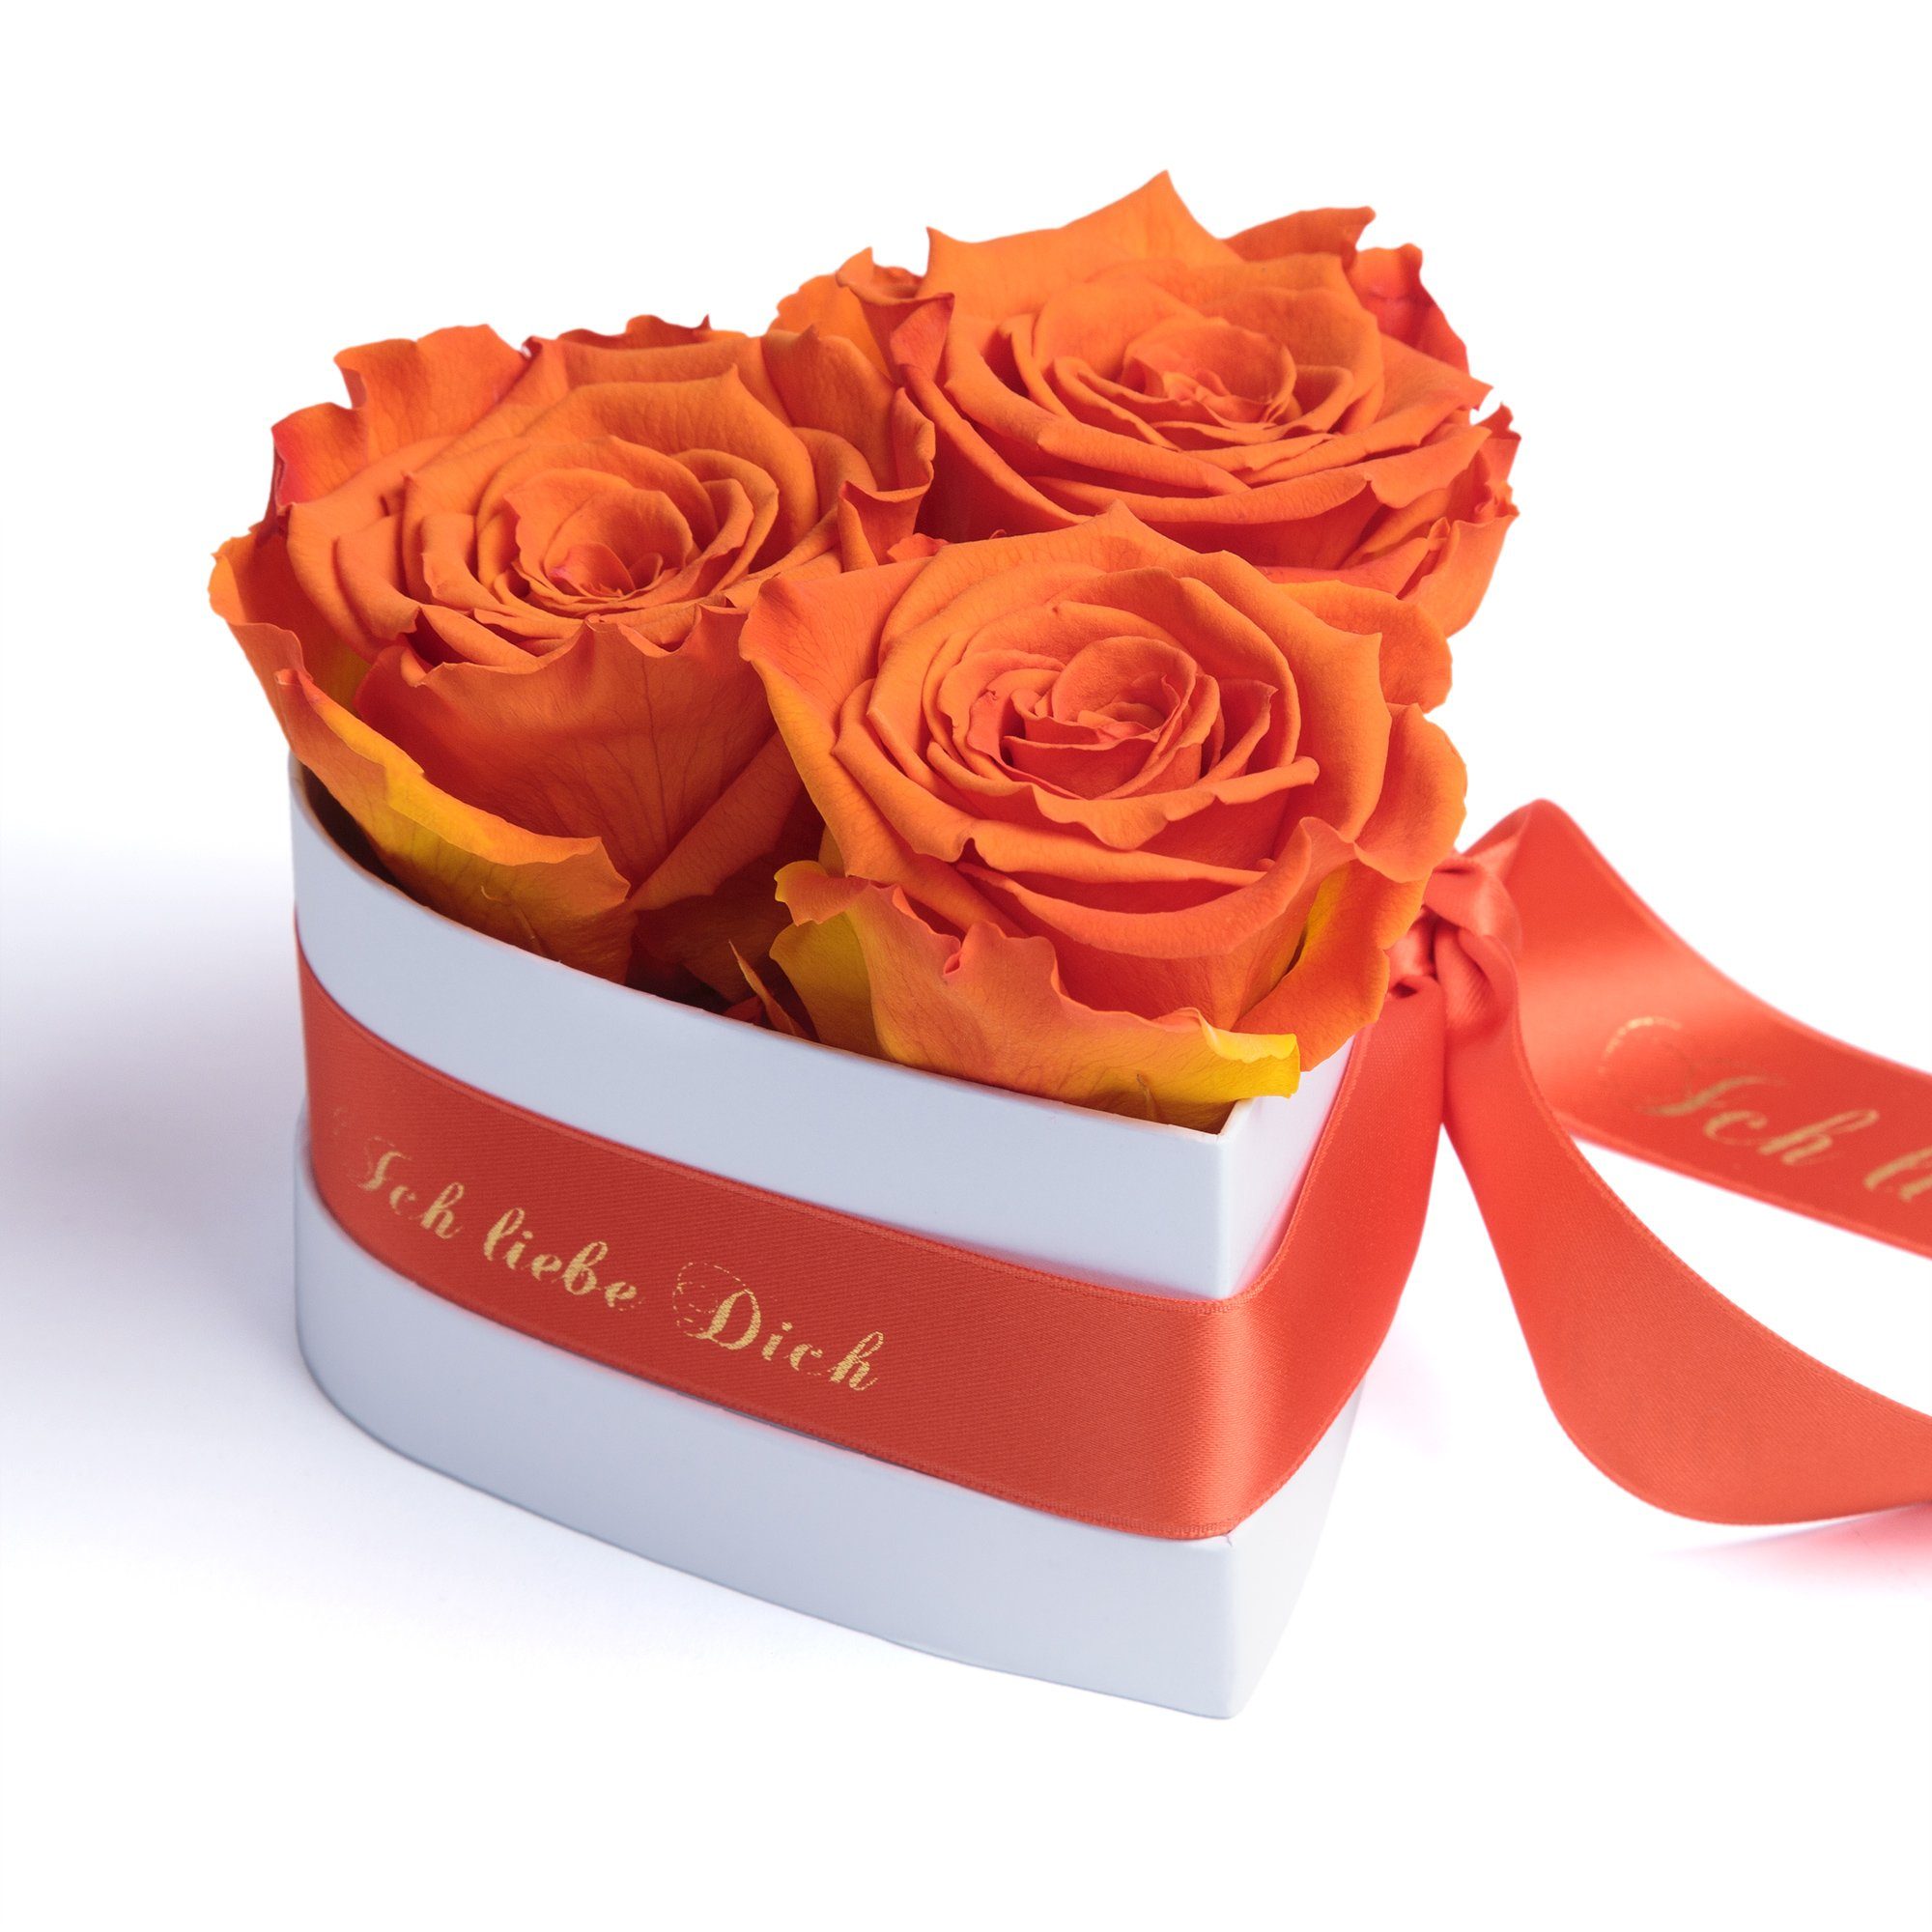 Kunstblume Rosenbox Herz 3 infinity Rosen Ich liebe Dich Geschenk für Sie Rose, ROSEMARIE SCHULZ Heidelberg, Höhe 10 cm, Liebesbeweis Valentinstag orange